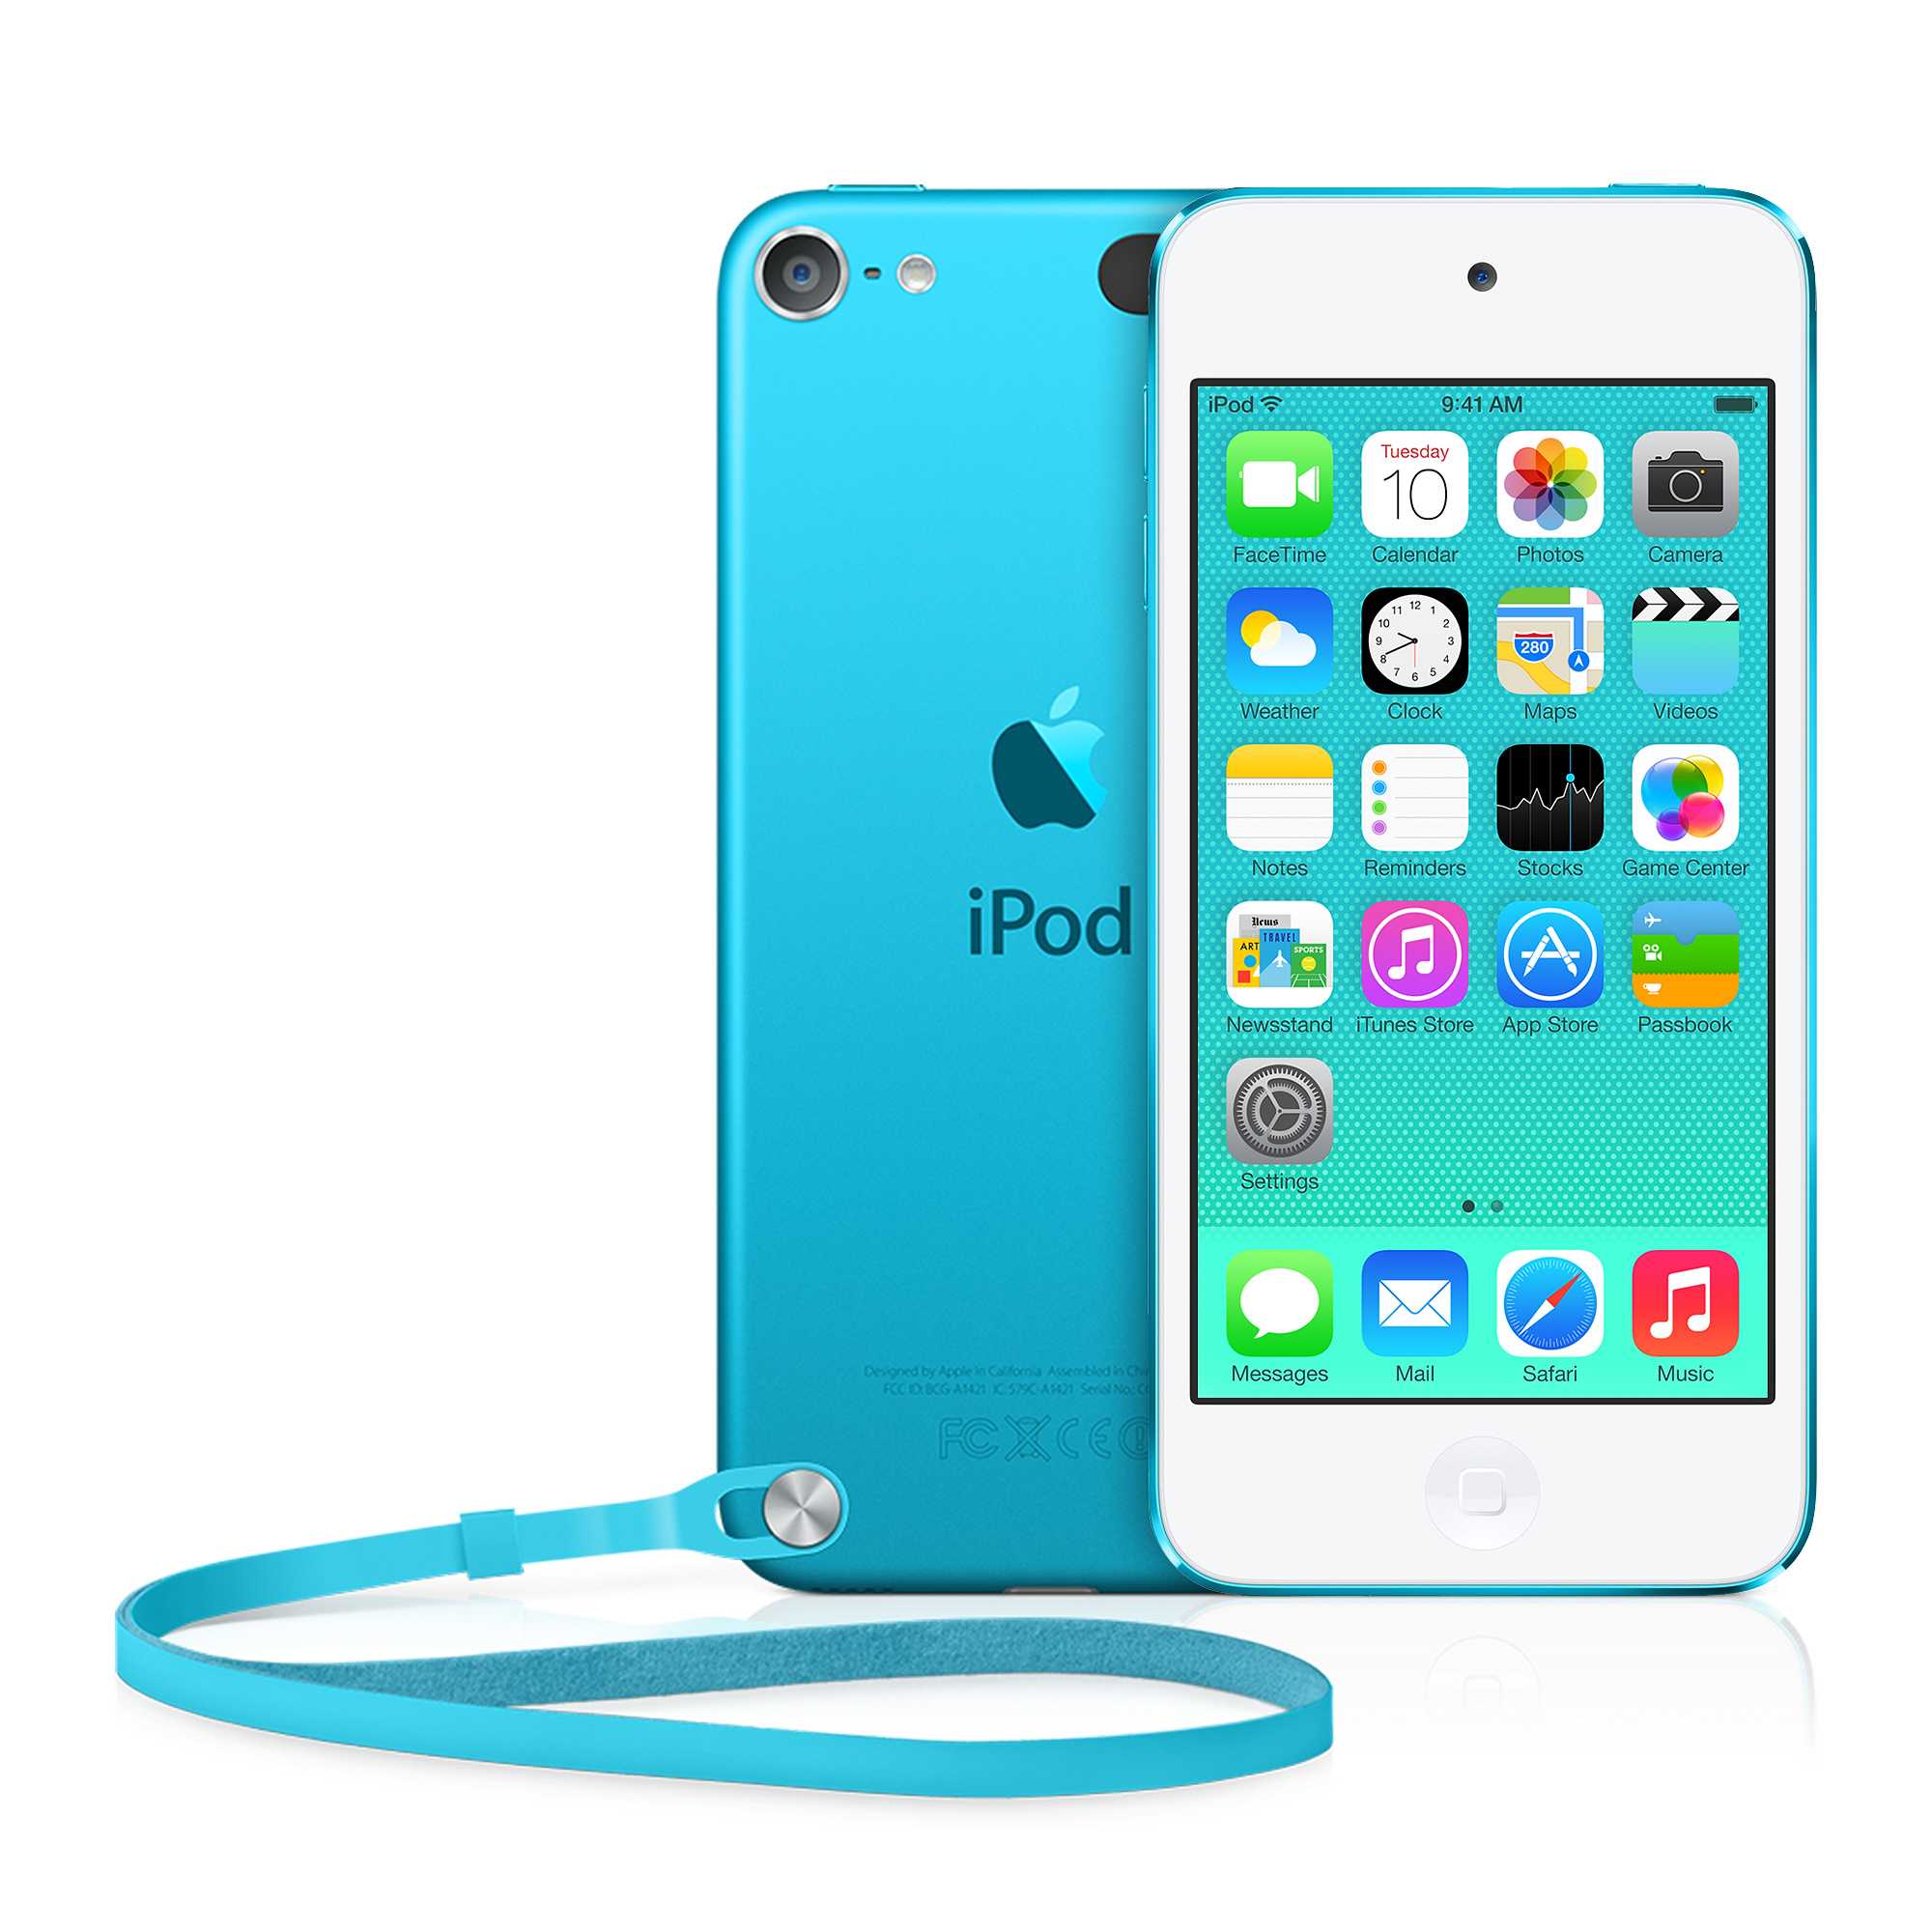 MP3-плеера Apple iPod touch 5 16Gb - подробные характеристики обзоры видео фото Цены в интернет-магазинах где можно купить mp3-плееру Apple iPod touch 5 16Gb